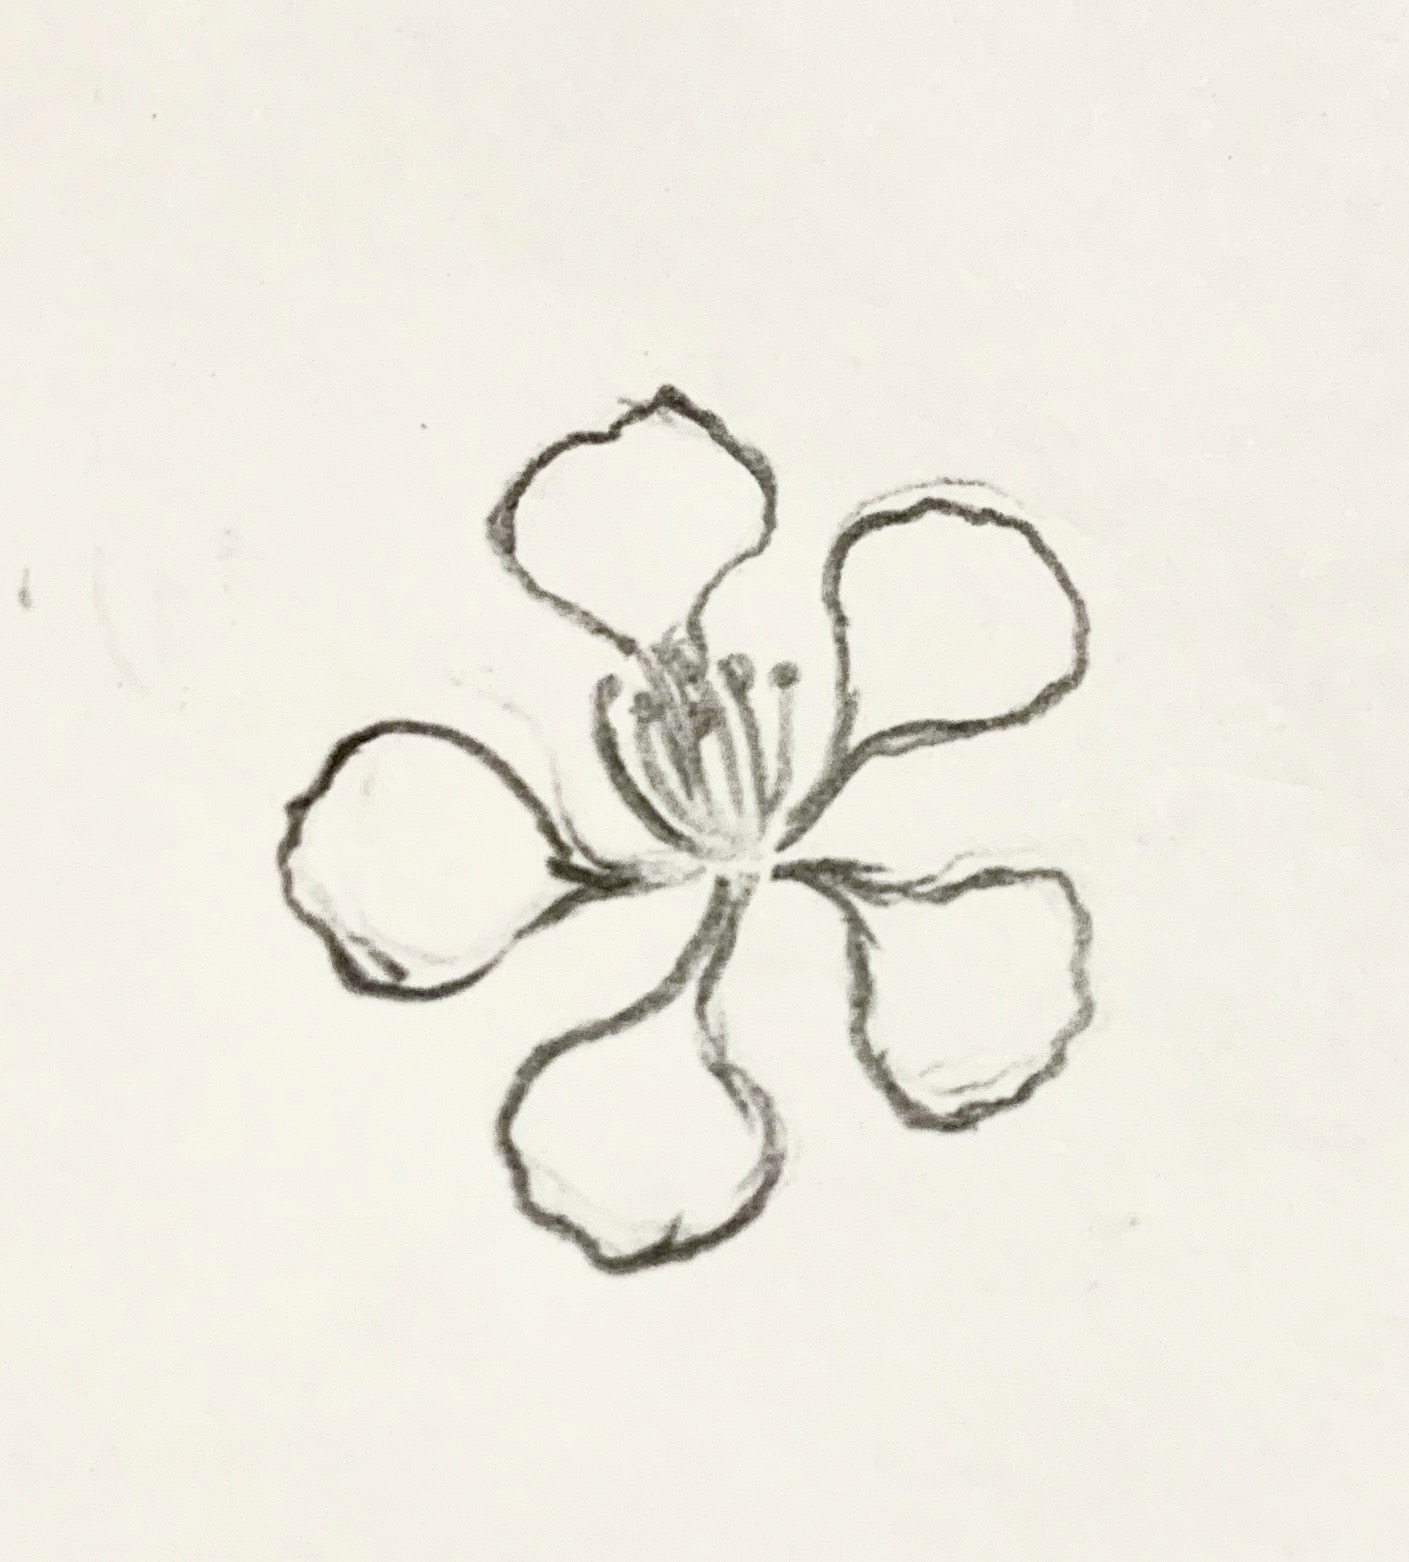 Xem Ngay Cách vẽ hoa 5 cánh đơn giản nhất dành cho các bé  Thiết Kế Xinh